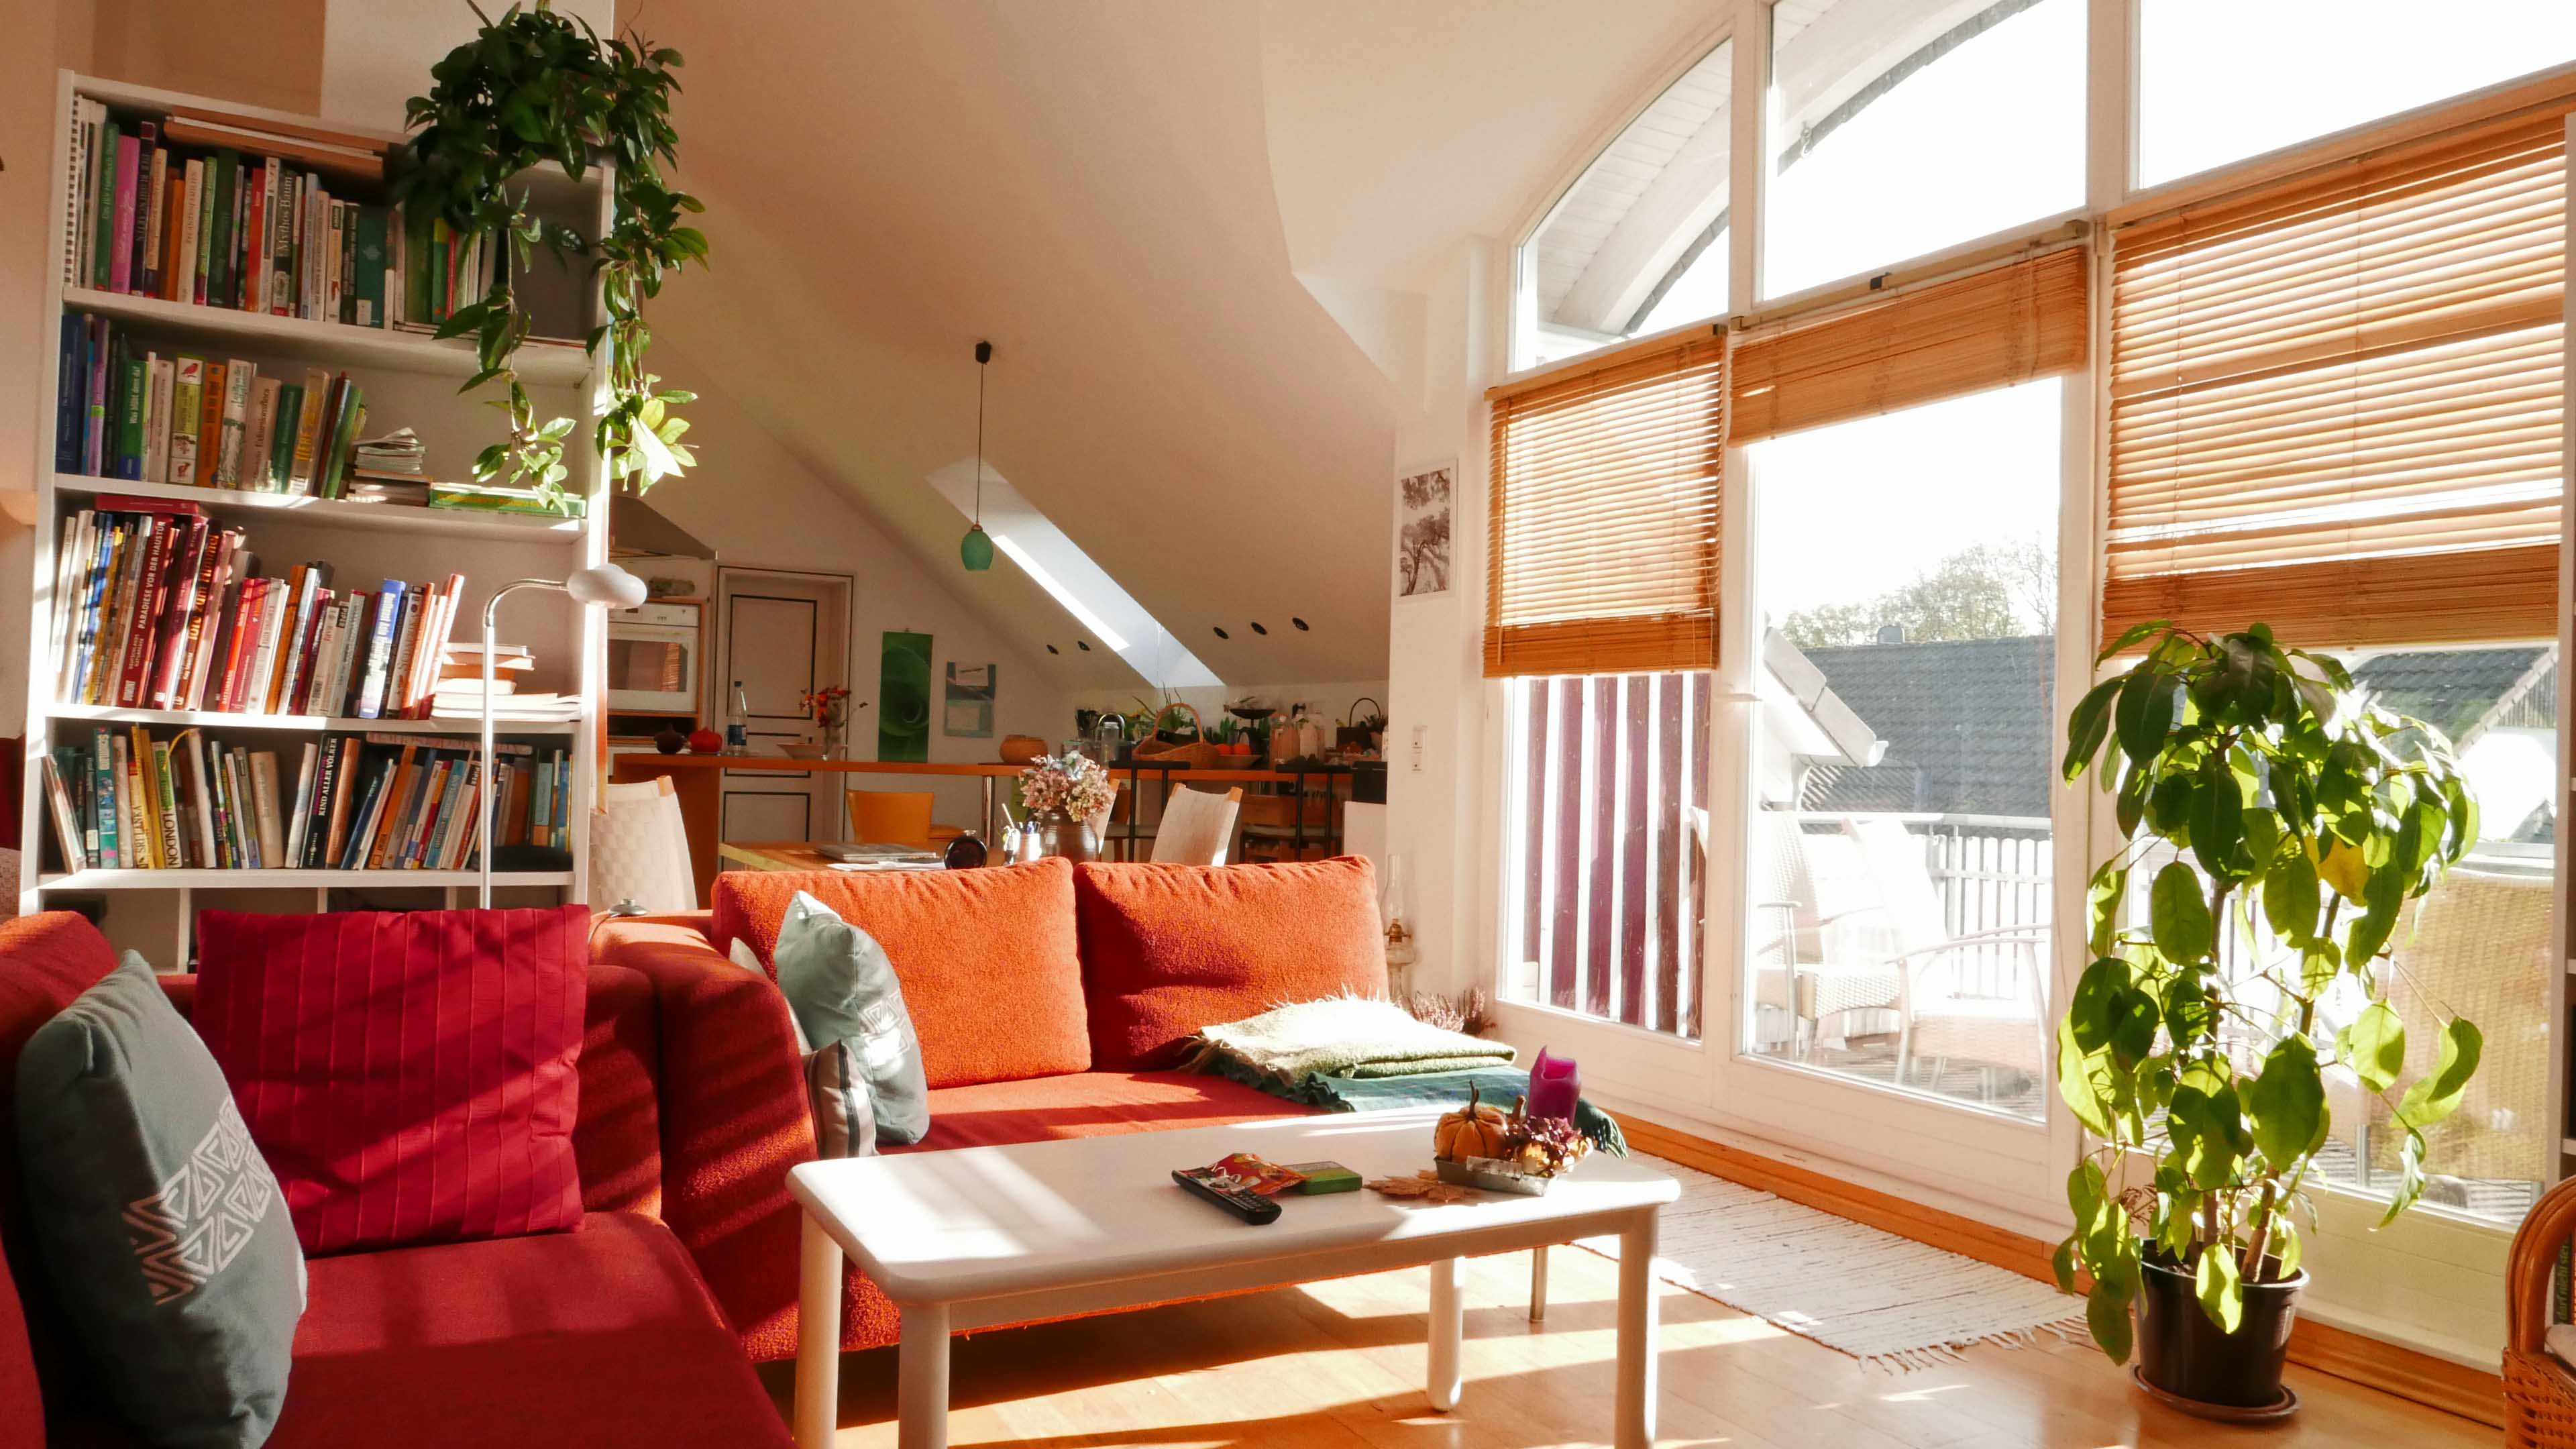 Nümbrecht: 2-Familienhaus in Toplage, Wohnbereich mit Panoramafenster und...